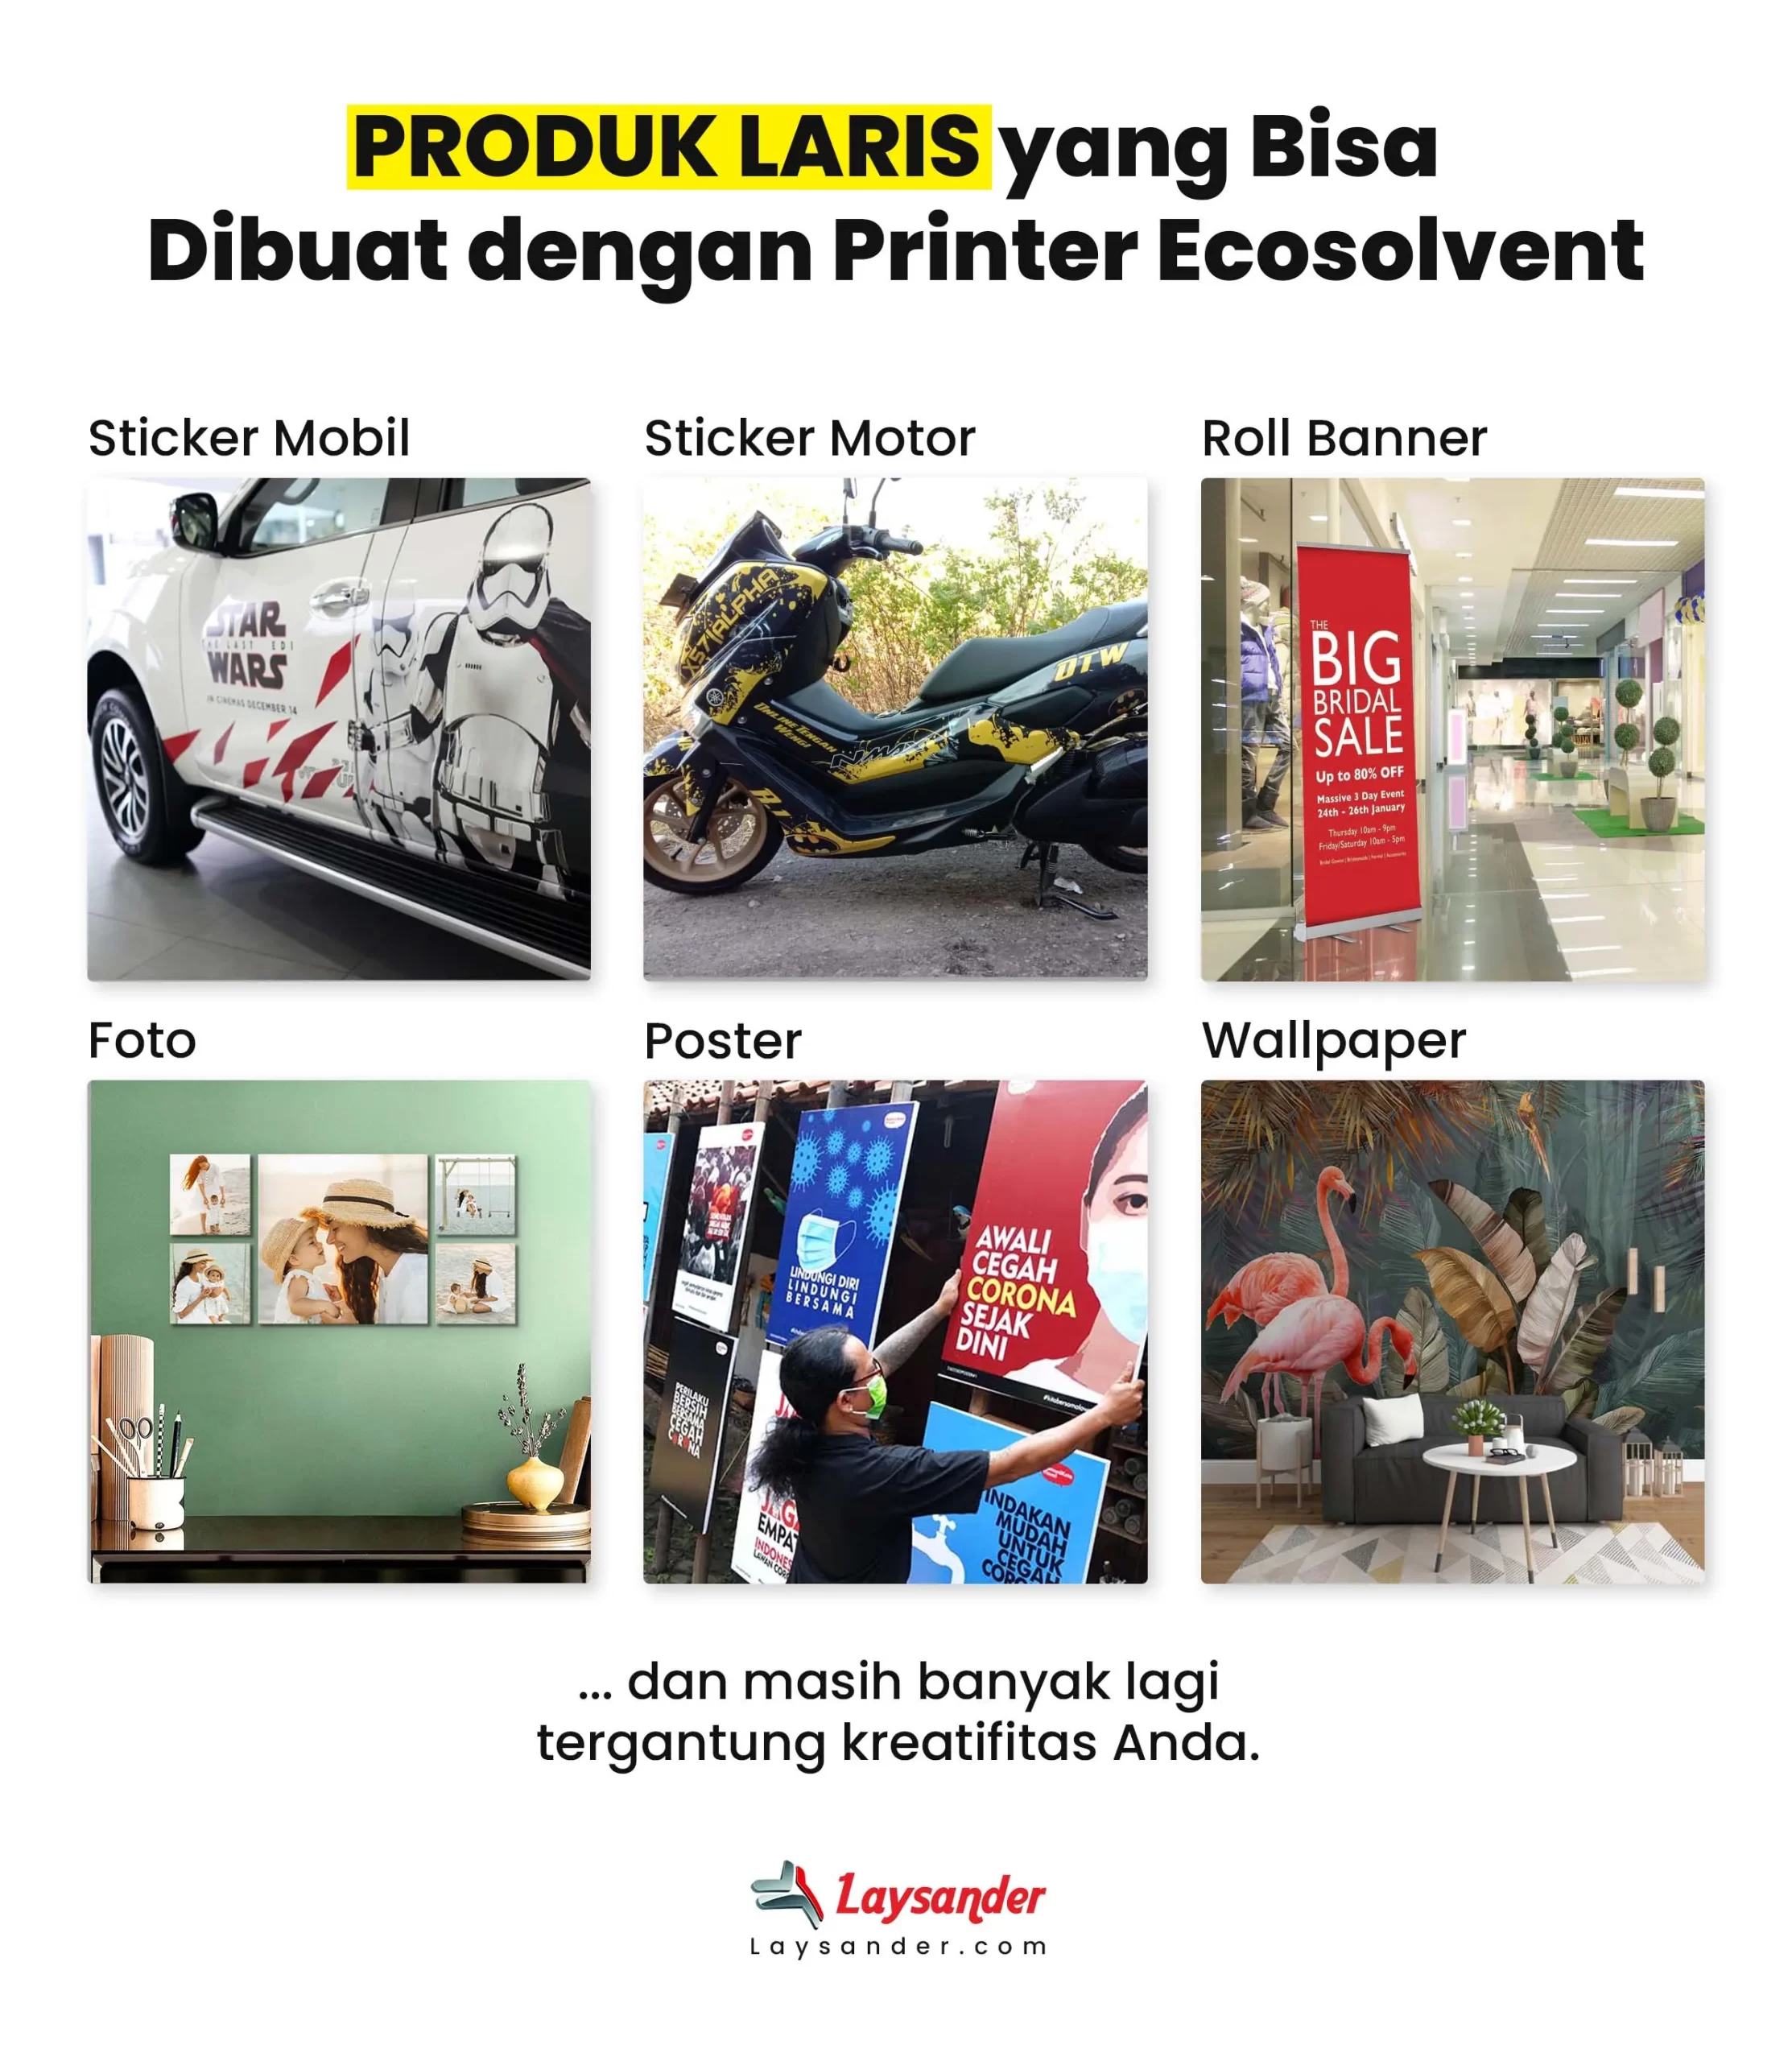 Produk Yang Bisa Diahasilkan Menggunakan Printer Ecosolvent